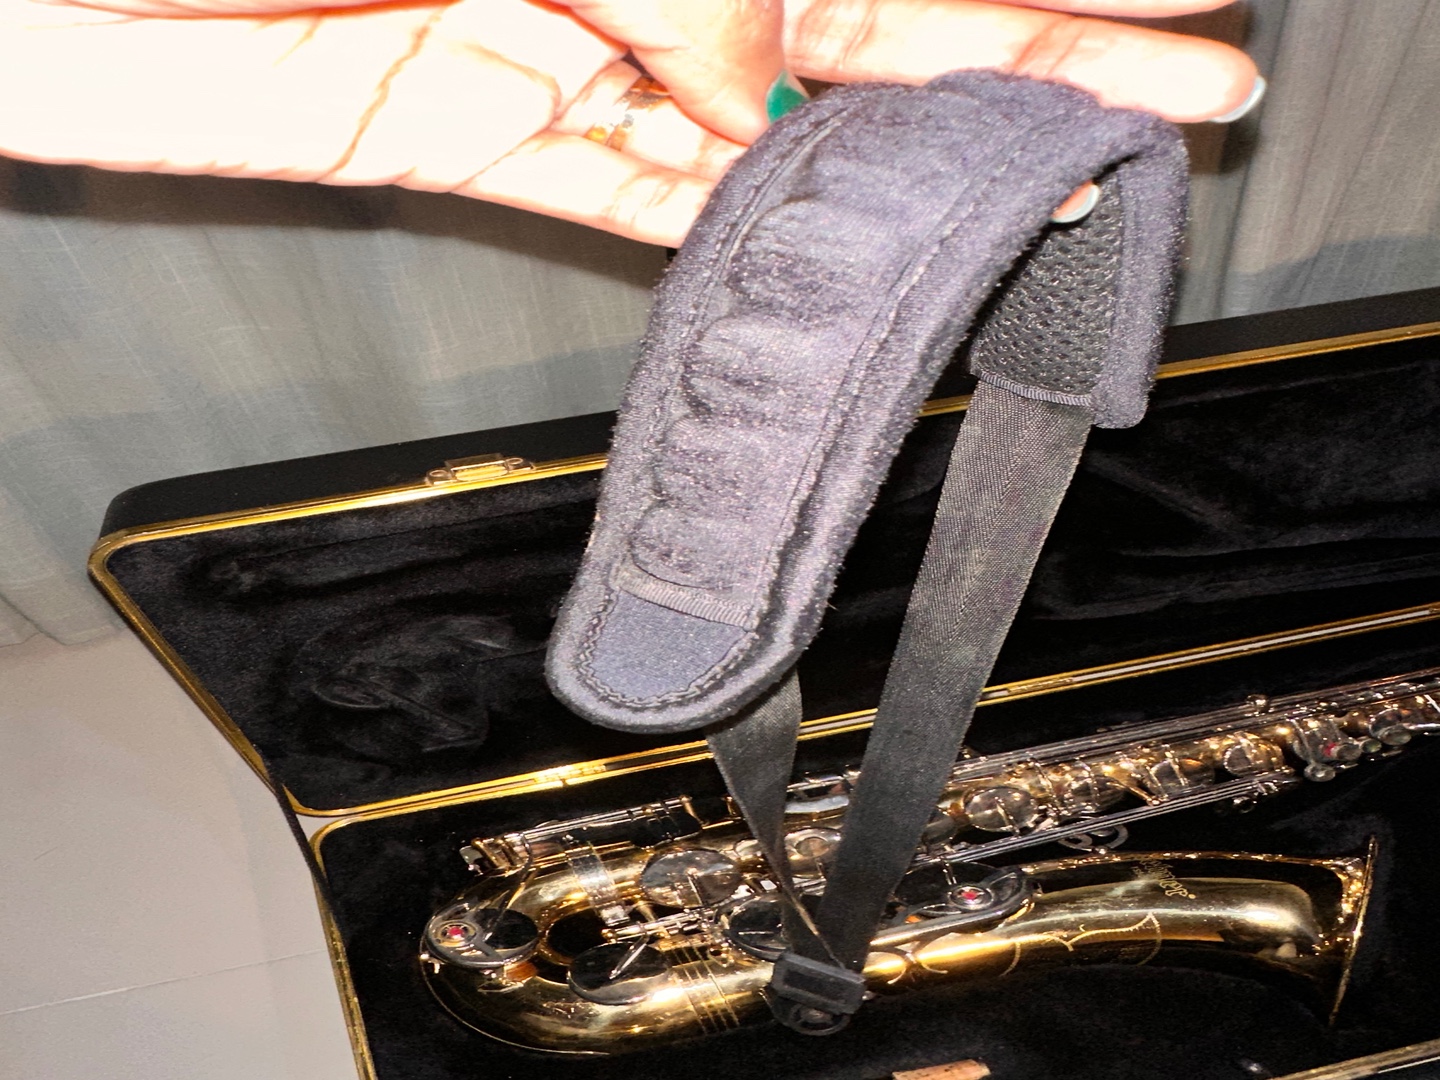 instrumentos musicales - Saxofón tenor Selmer. Poco uso, bien conservado, incluye accesorios y libros. 7